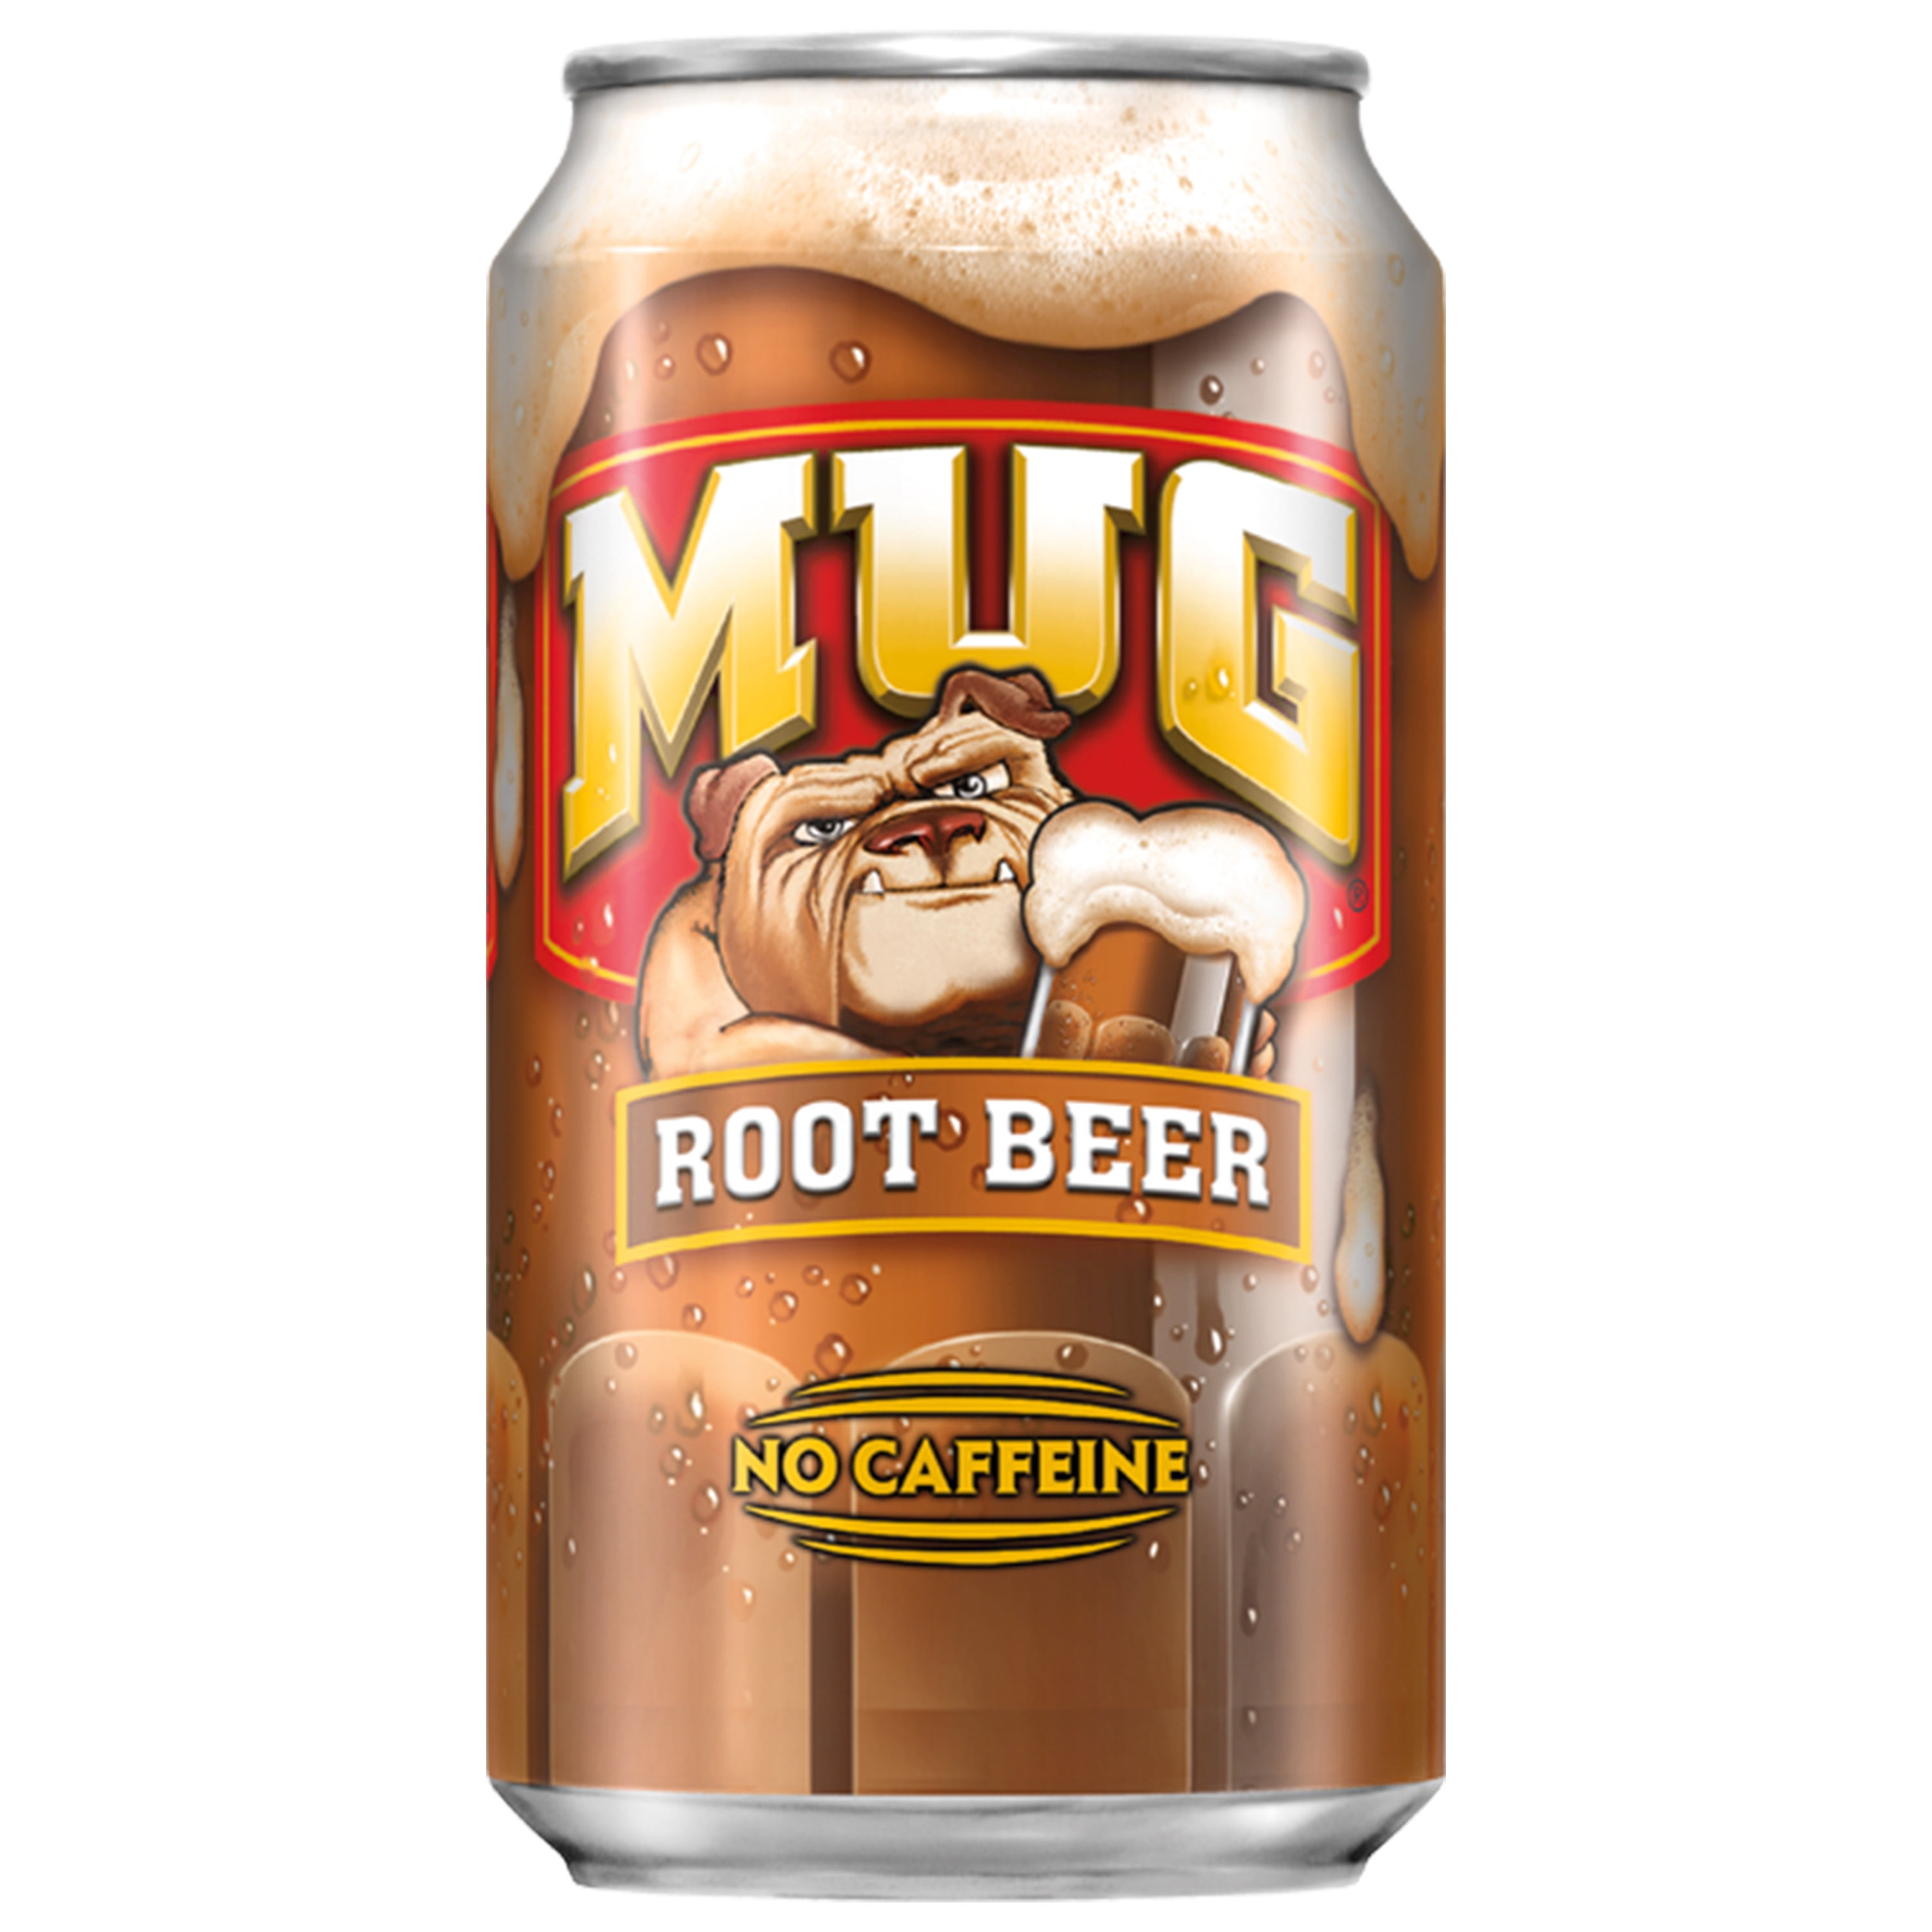 Root Beer 12 oz Soda - 12 Pk by Mug at Fleet Farm